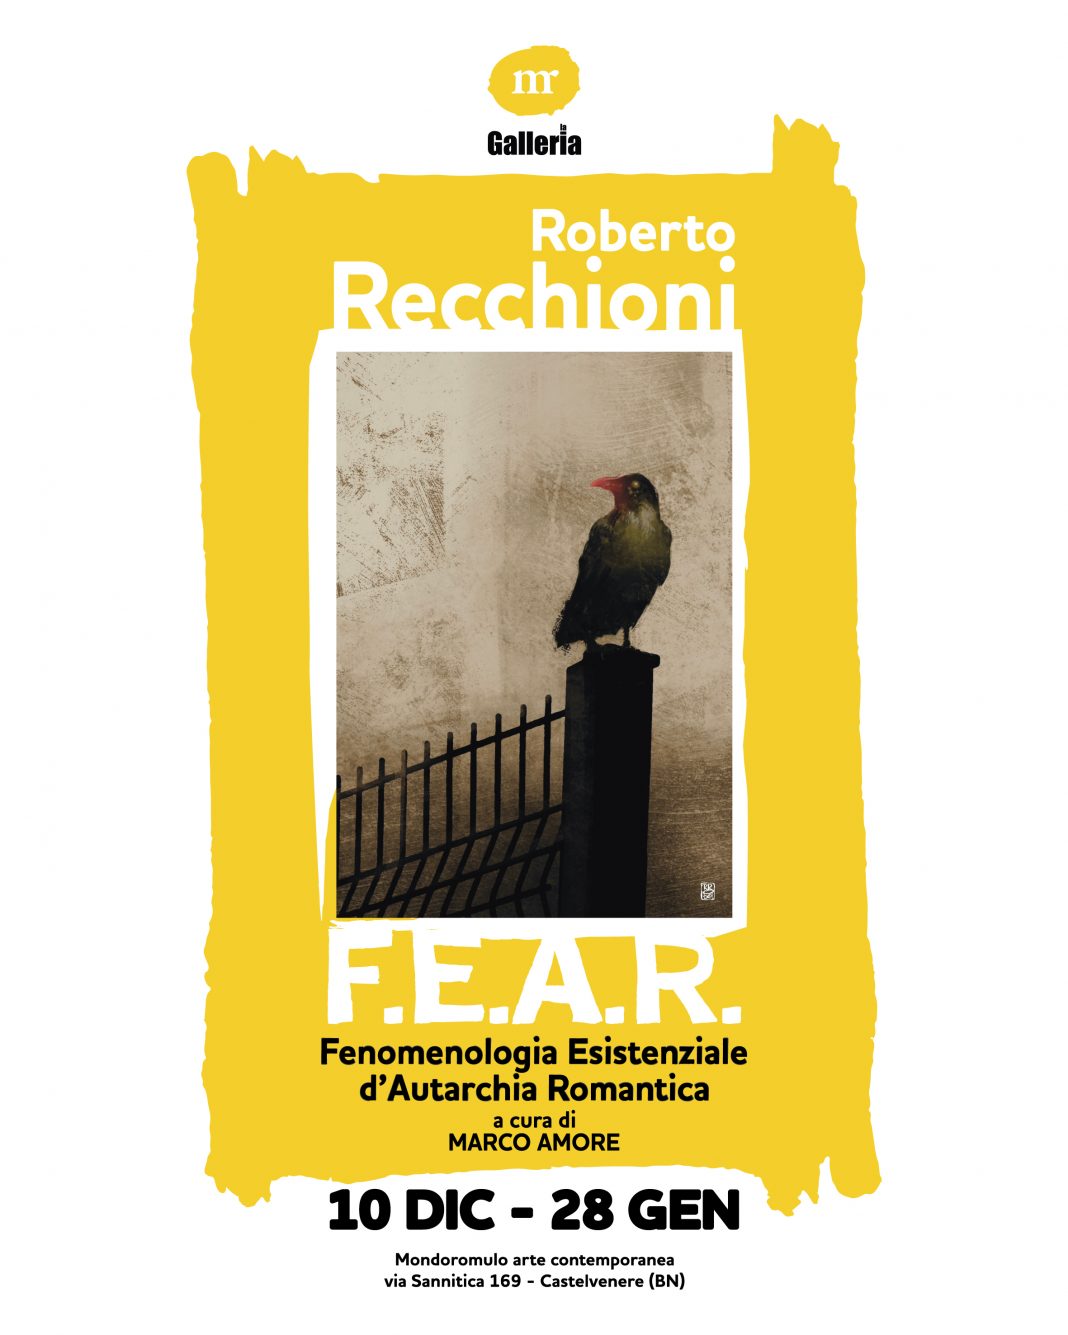 Roberto Recchioni – F.E.A.R. Fenomenologia Esistenziale d’Autarchia Romanticahttps://www.exibart.com/repository/media/formidable/11/img/ae3/recchionipost-02-1068x1335.jpg